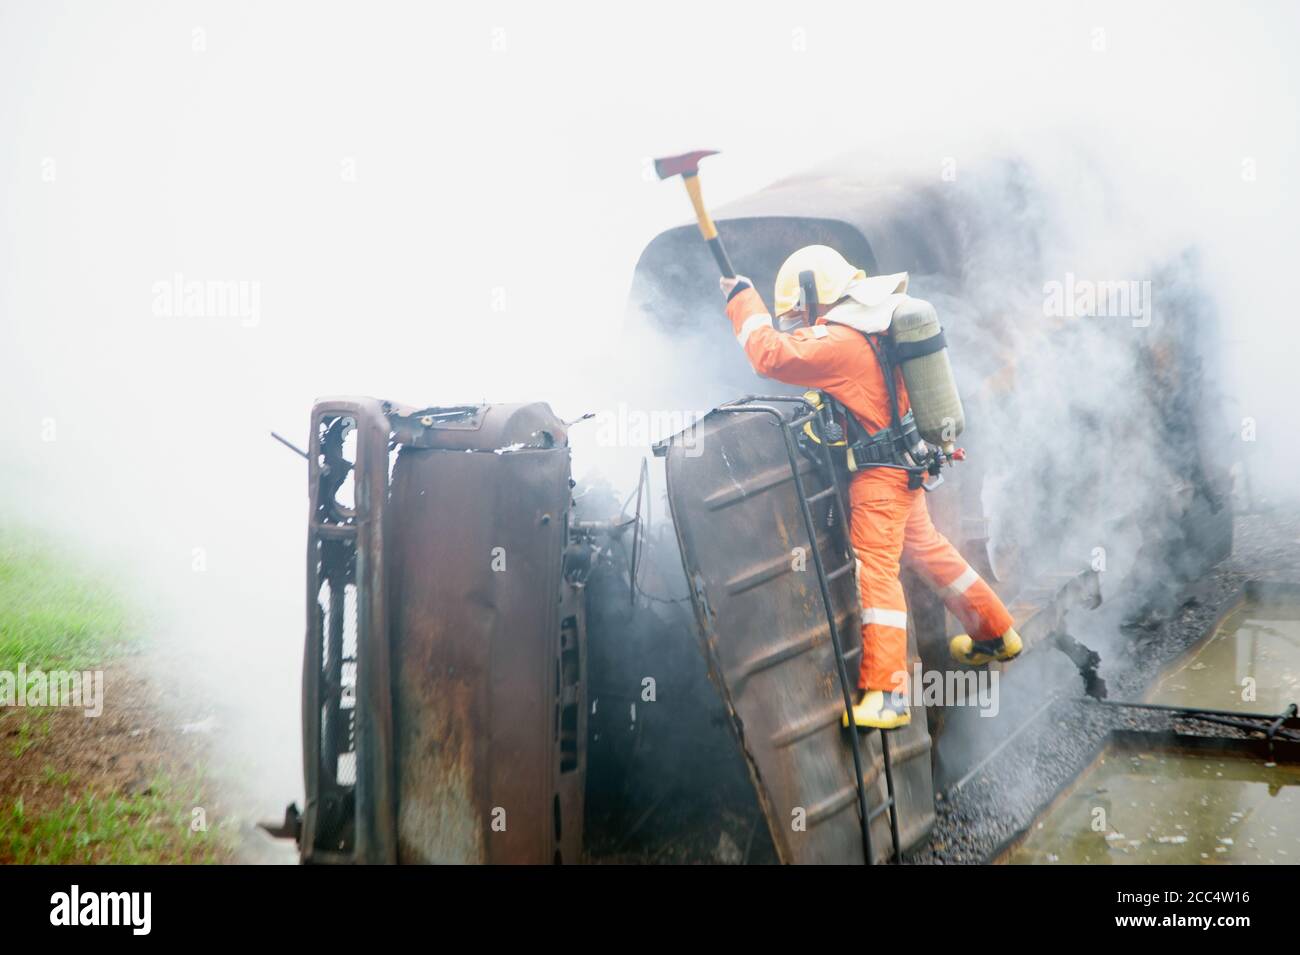 Les pompiers utilisant une hache détruisent les obstacles dans une voiture brûlante et fumée. Banque D'Images